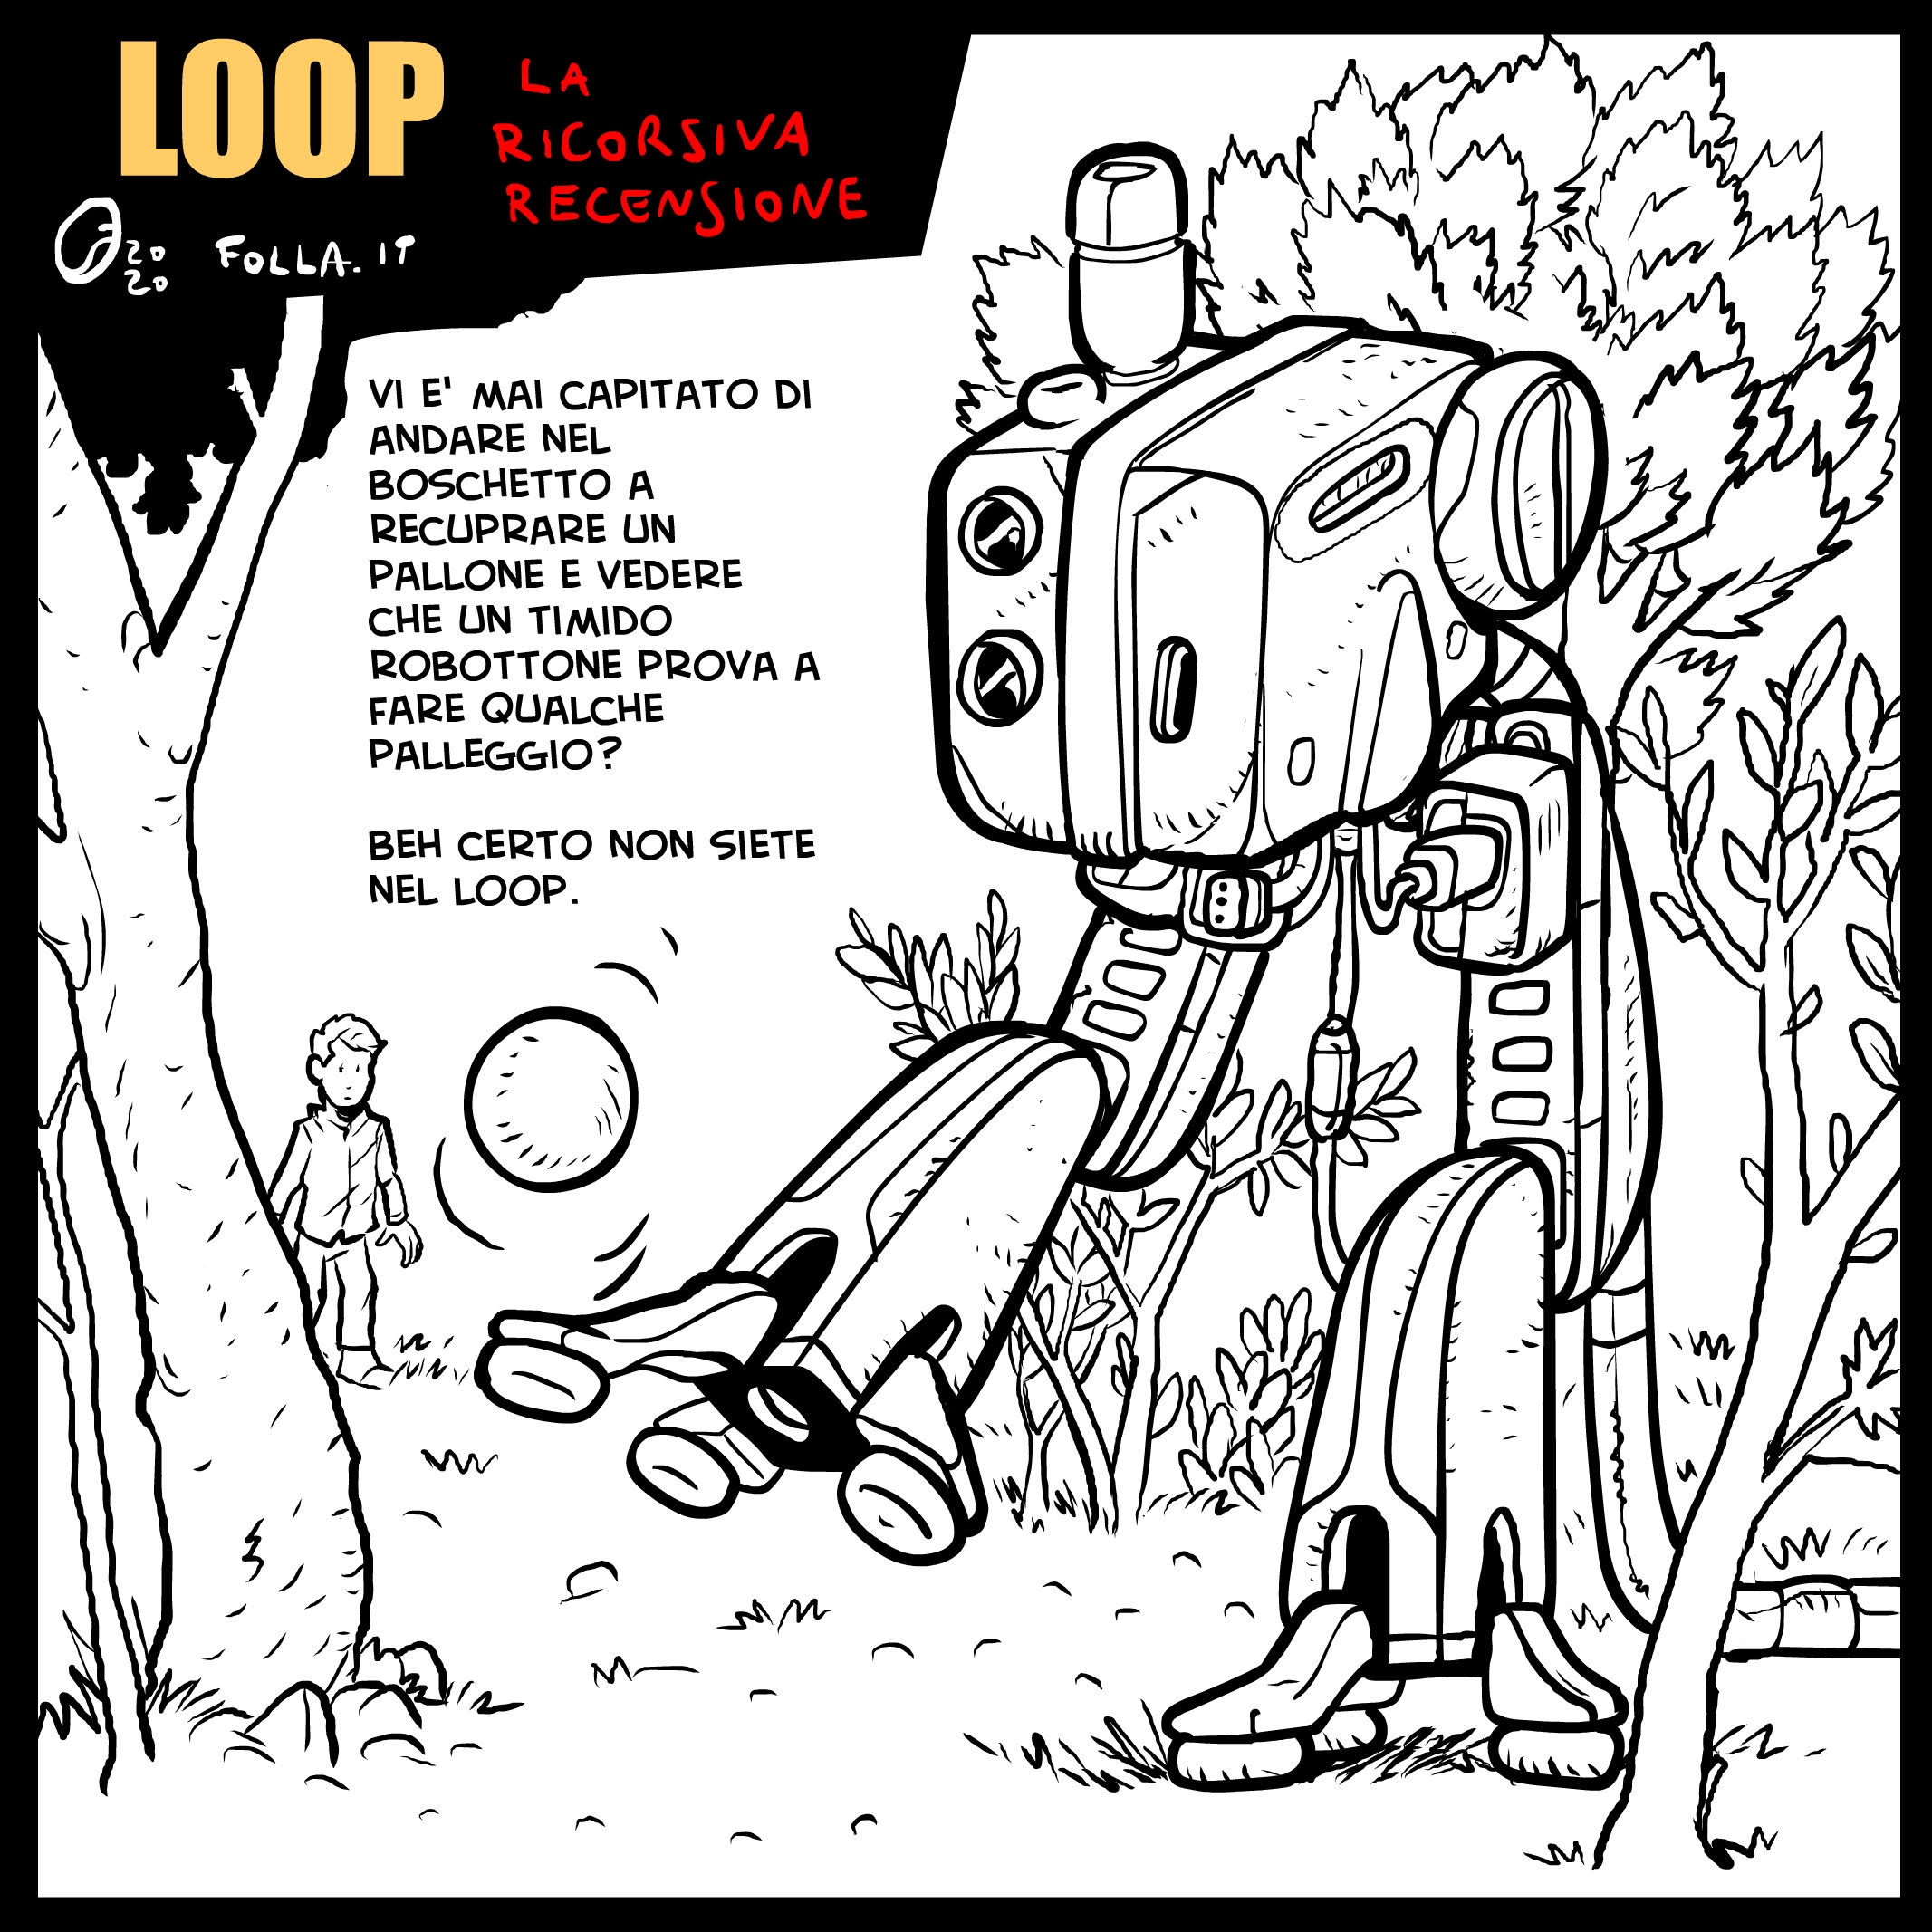 Immagine a fumetti della serie tv Loop, tra fantascienza e poesia. Un robot di grandi dimensioni si aggira per un bosco con alberi, sullo sfondo un essere umano che guarda il robot.